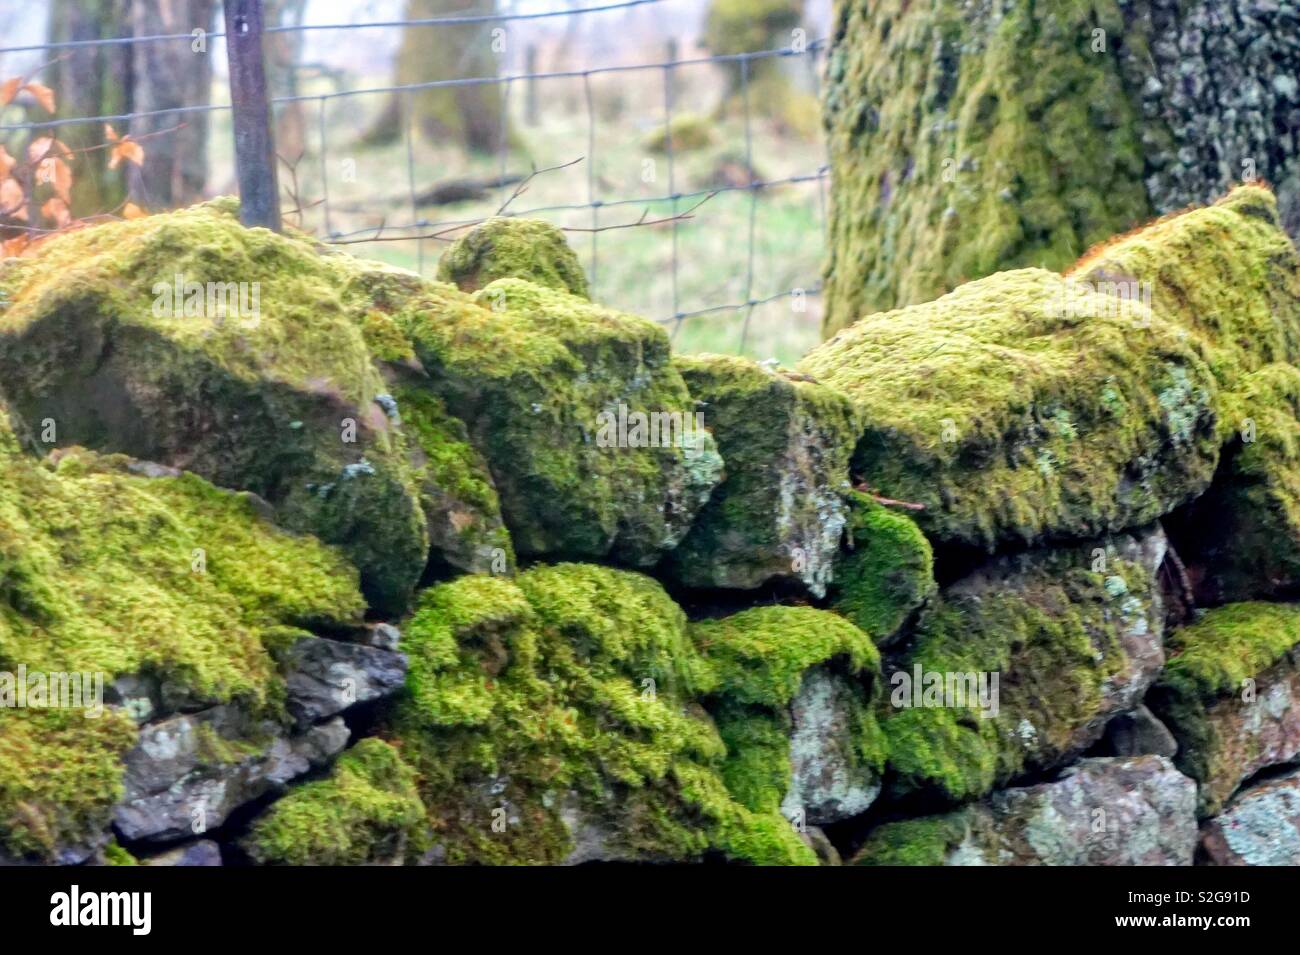 Moss sur mur de pierre à la campagne Banque D'Images